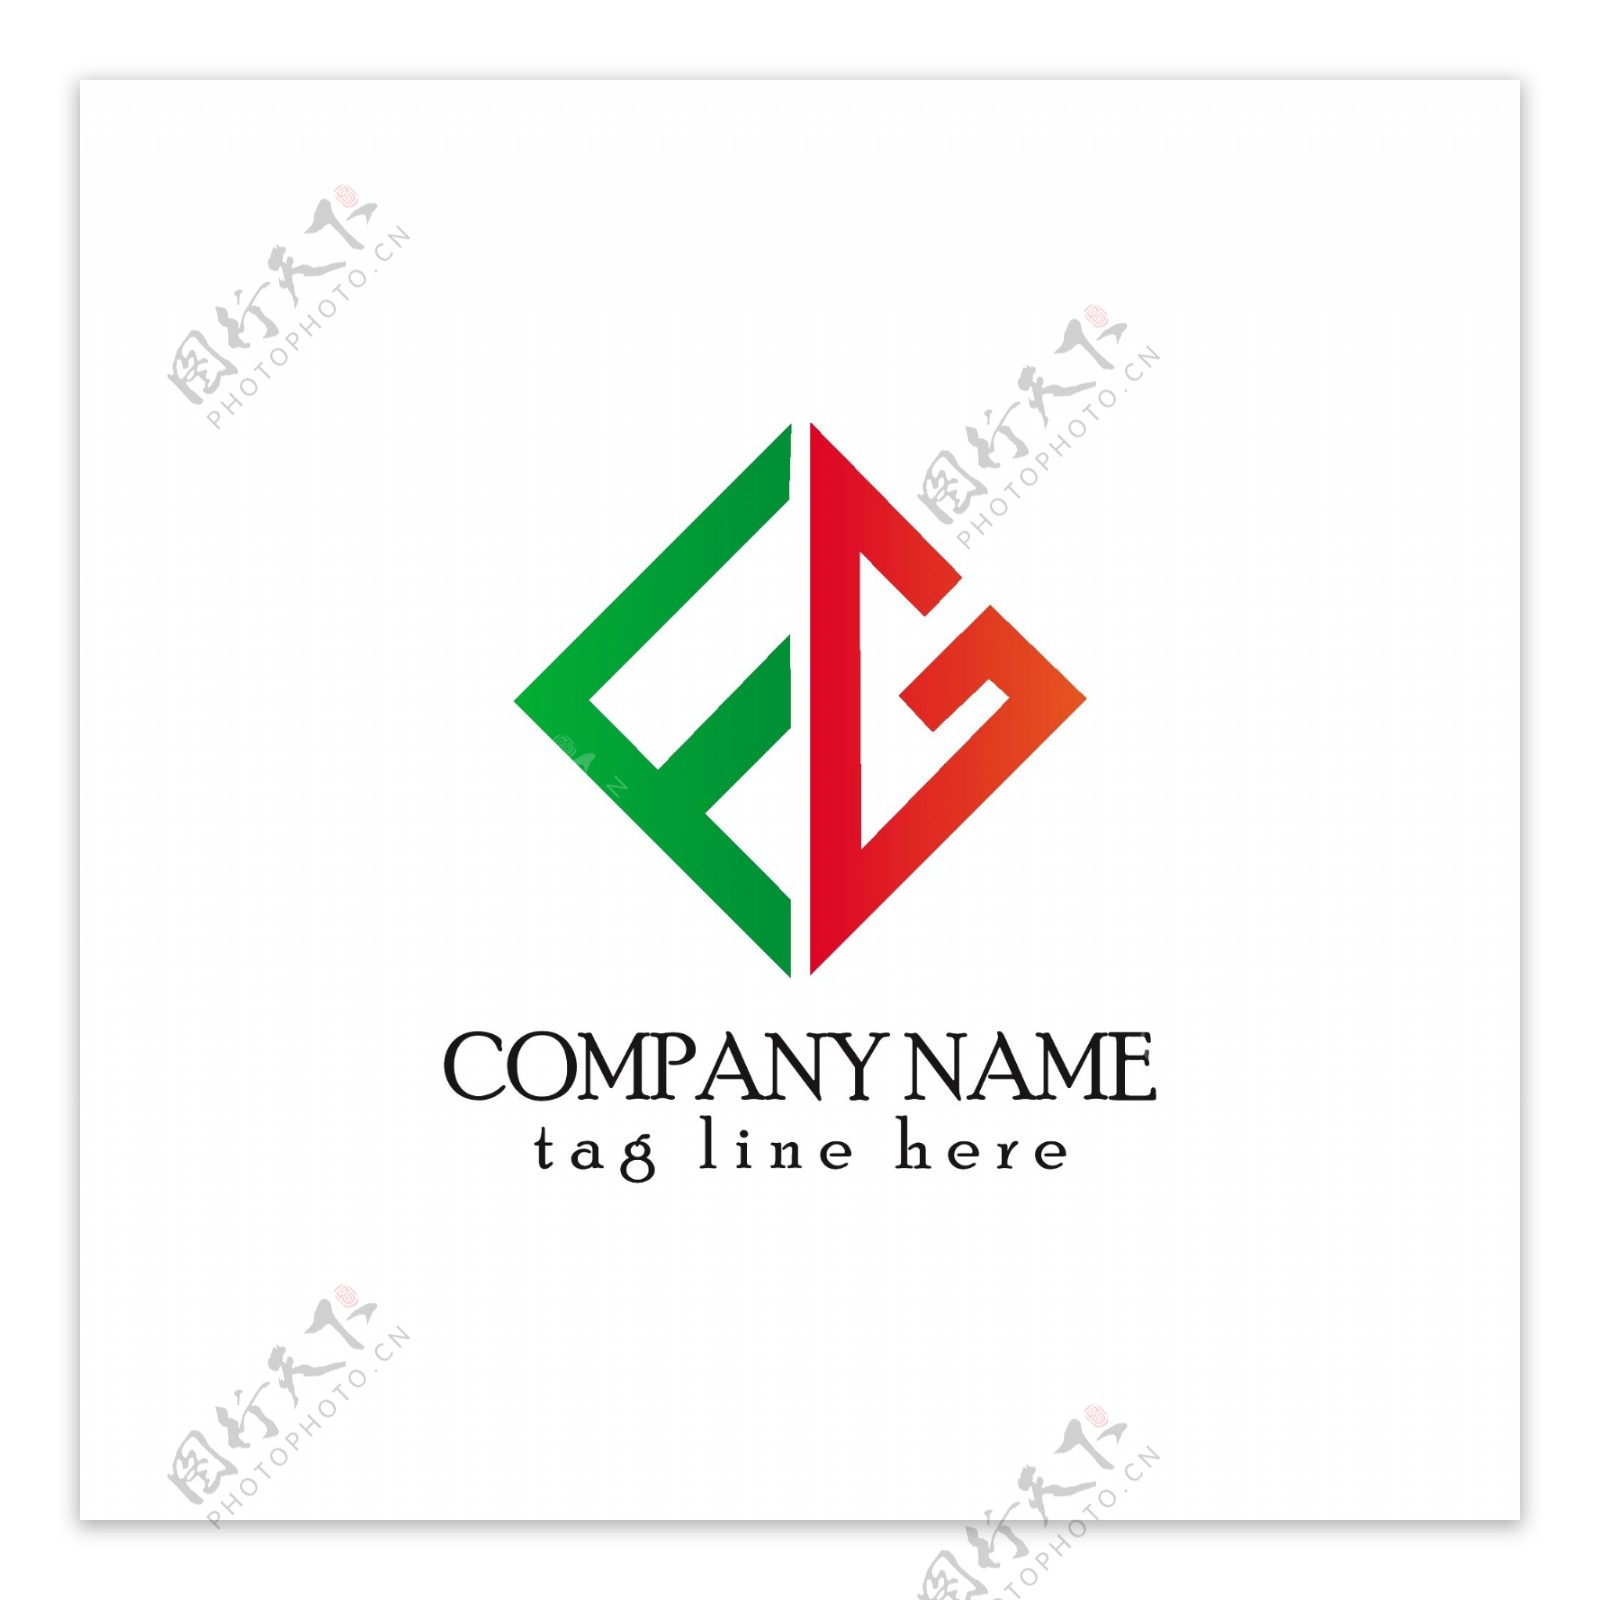 工业类标志标签logo